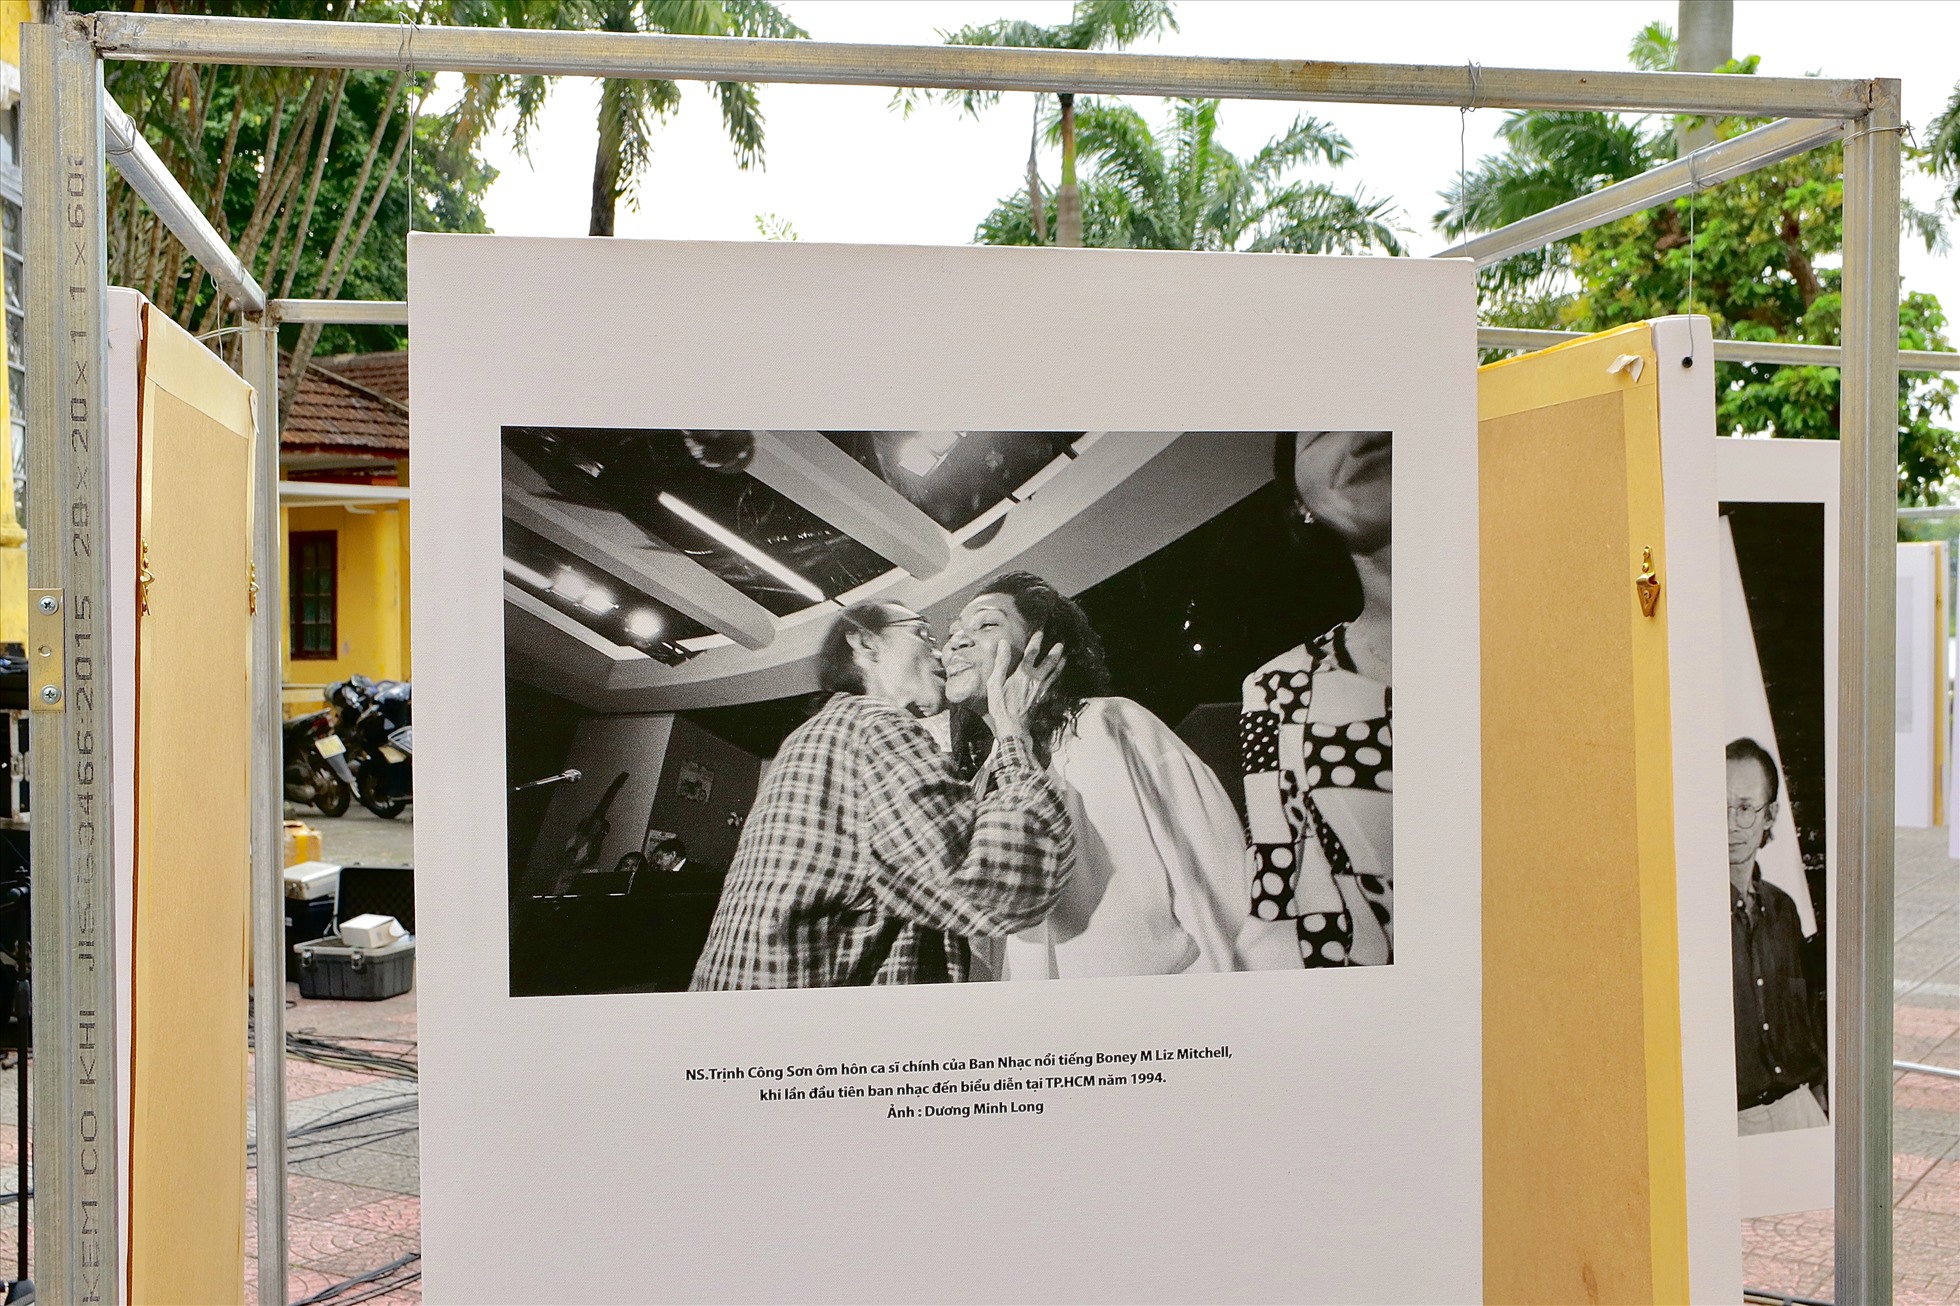 Khoảnh khắc đẹp NS. Trịnh Công Sơn ôm hôn ca sĩ chính của Ban nhạc nổi tiếng Boney M Liz Mitchell, khi lần đầu tiên ban nhạc này đến biểu diễn tại TP. Hồ Chí Minh năm 1994.